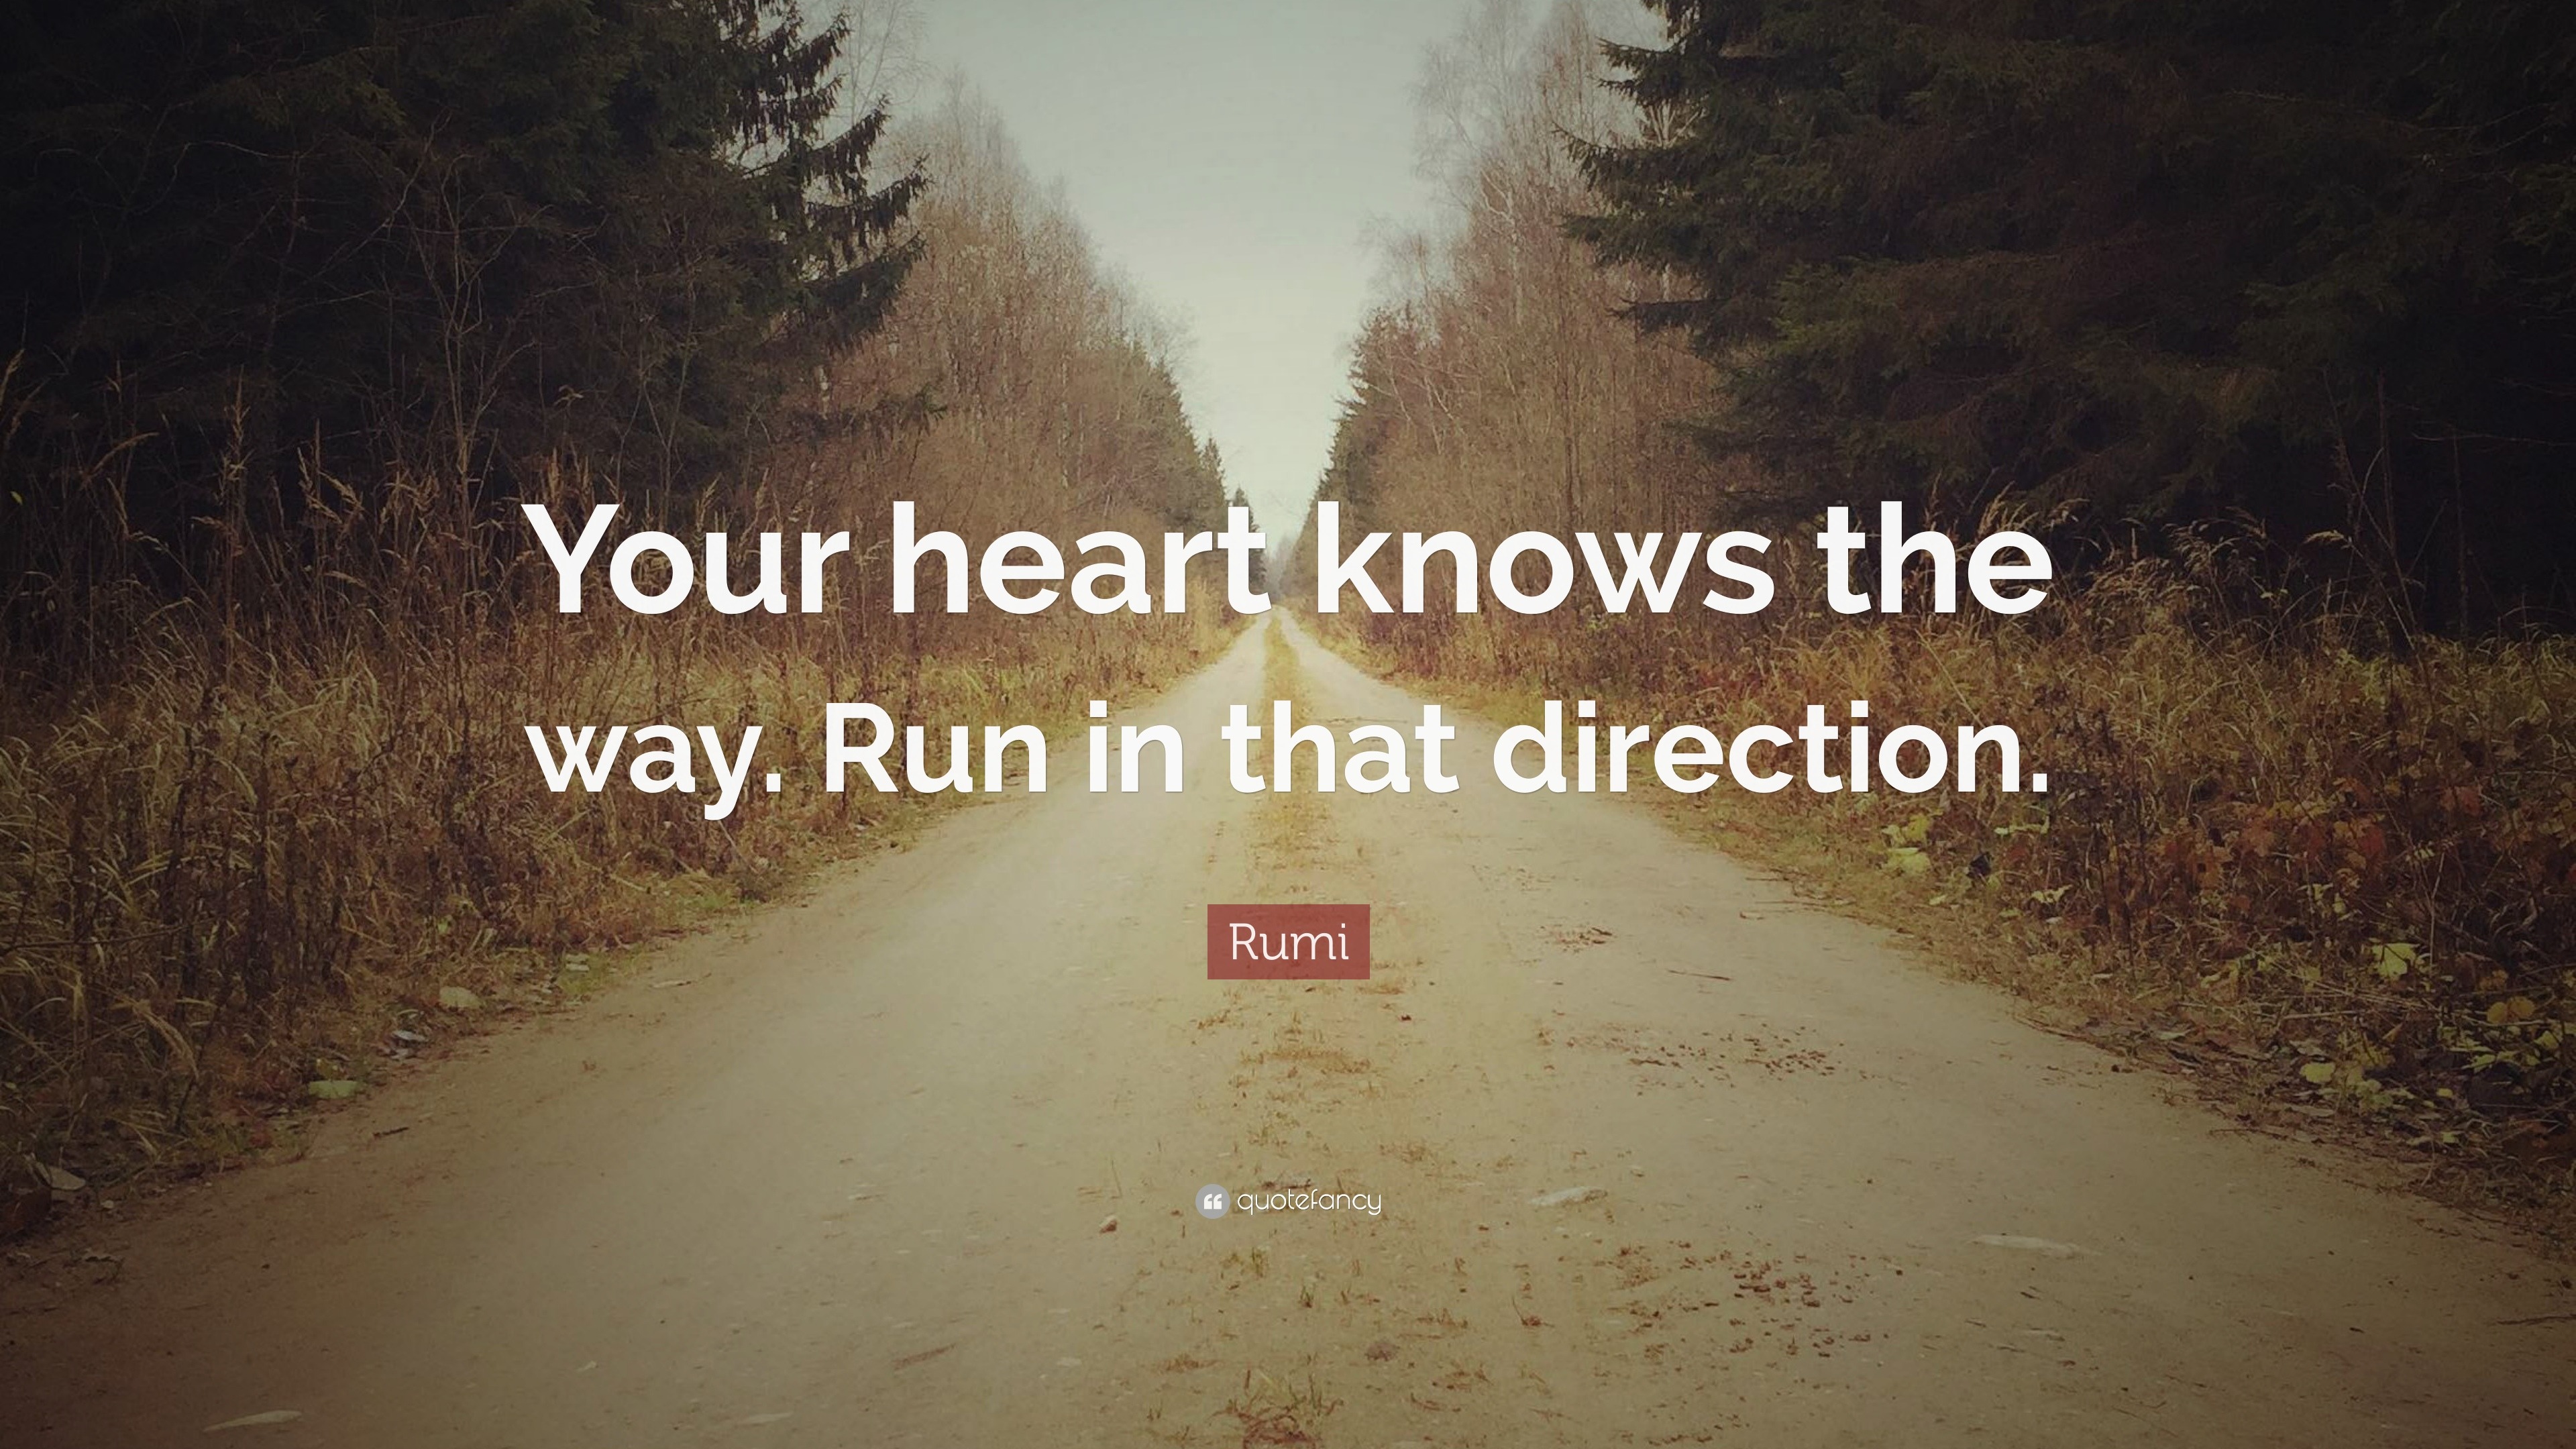 runas knows the way